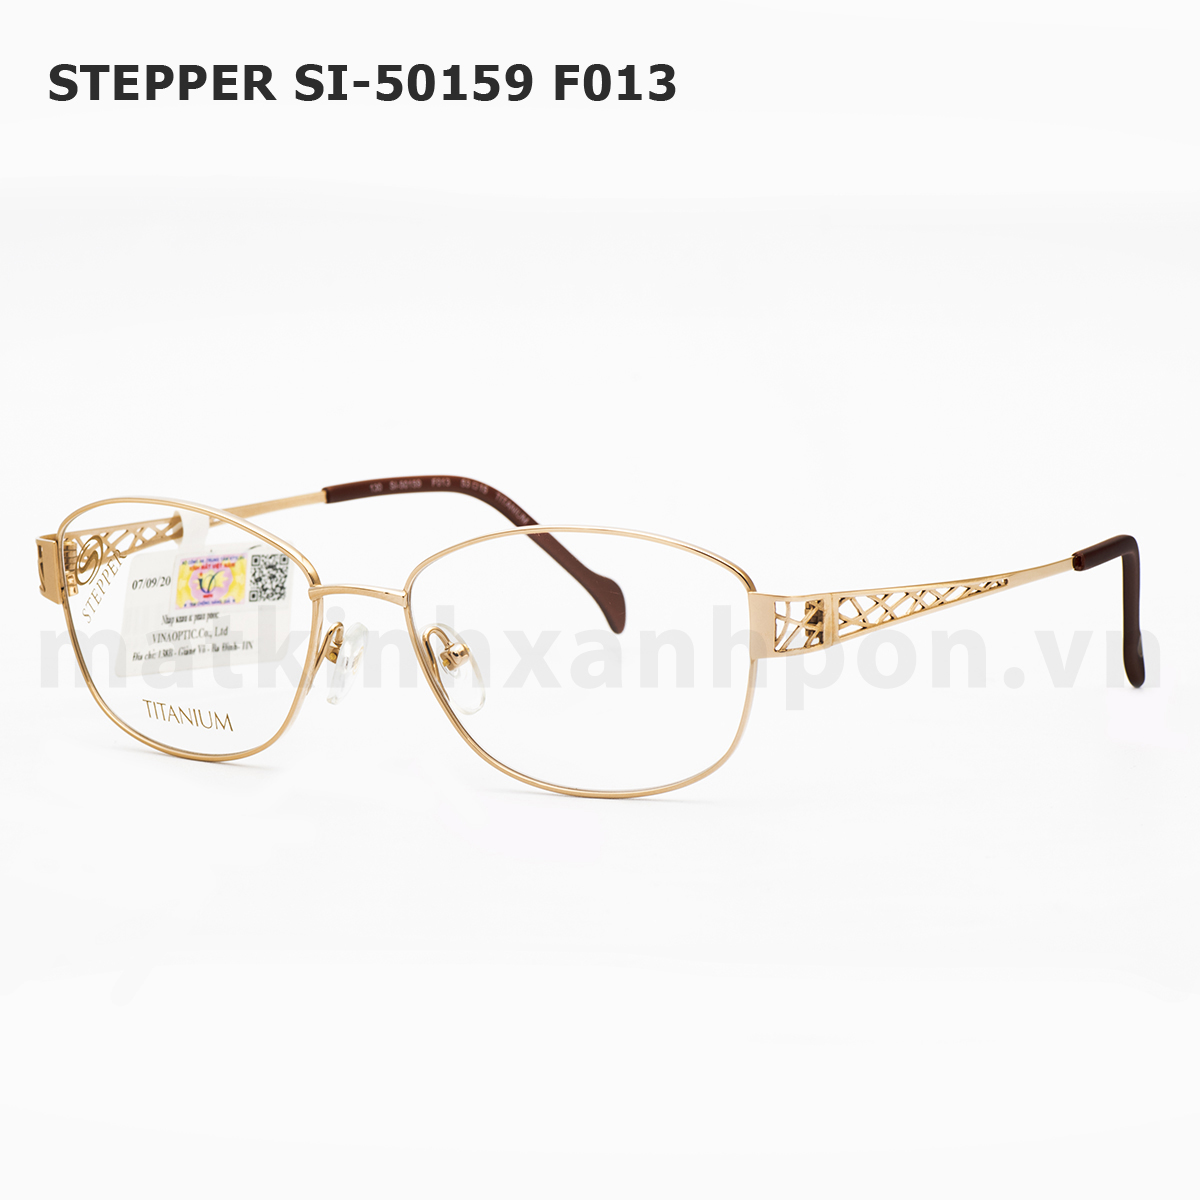 Stepper SI-50159 F013